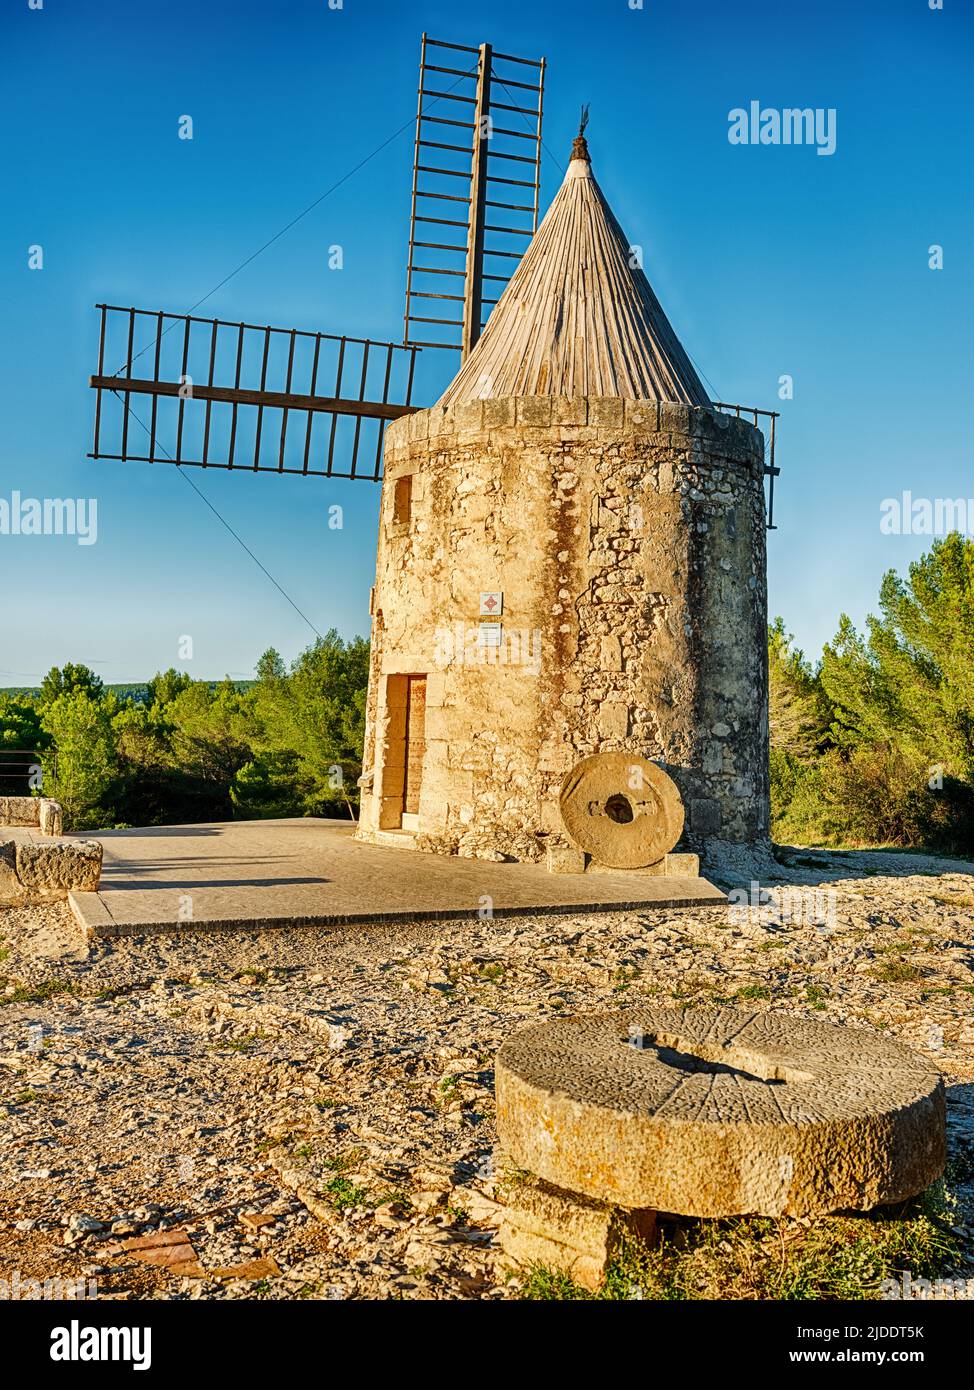 Il vecchio mulino a vento, o moulin, a Fontvielle è un punto di riferimento storico della Francia. Foto Stock